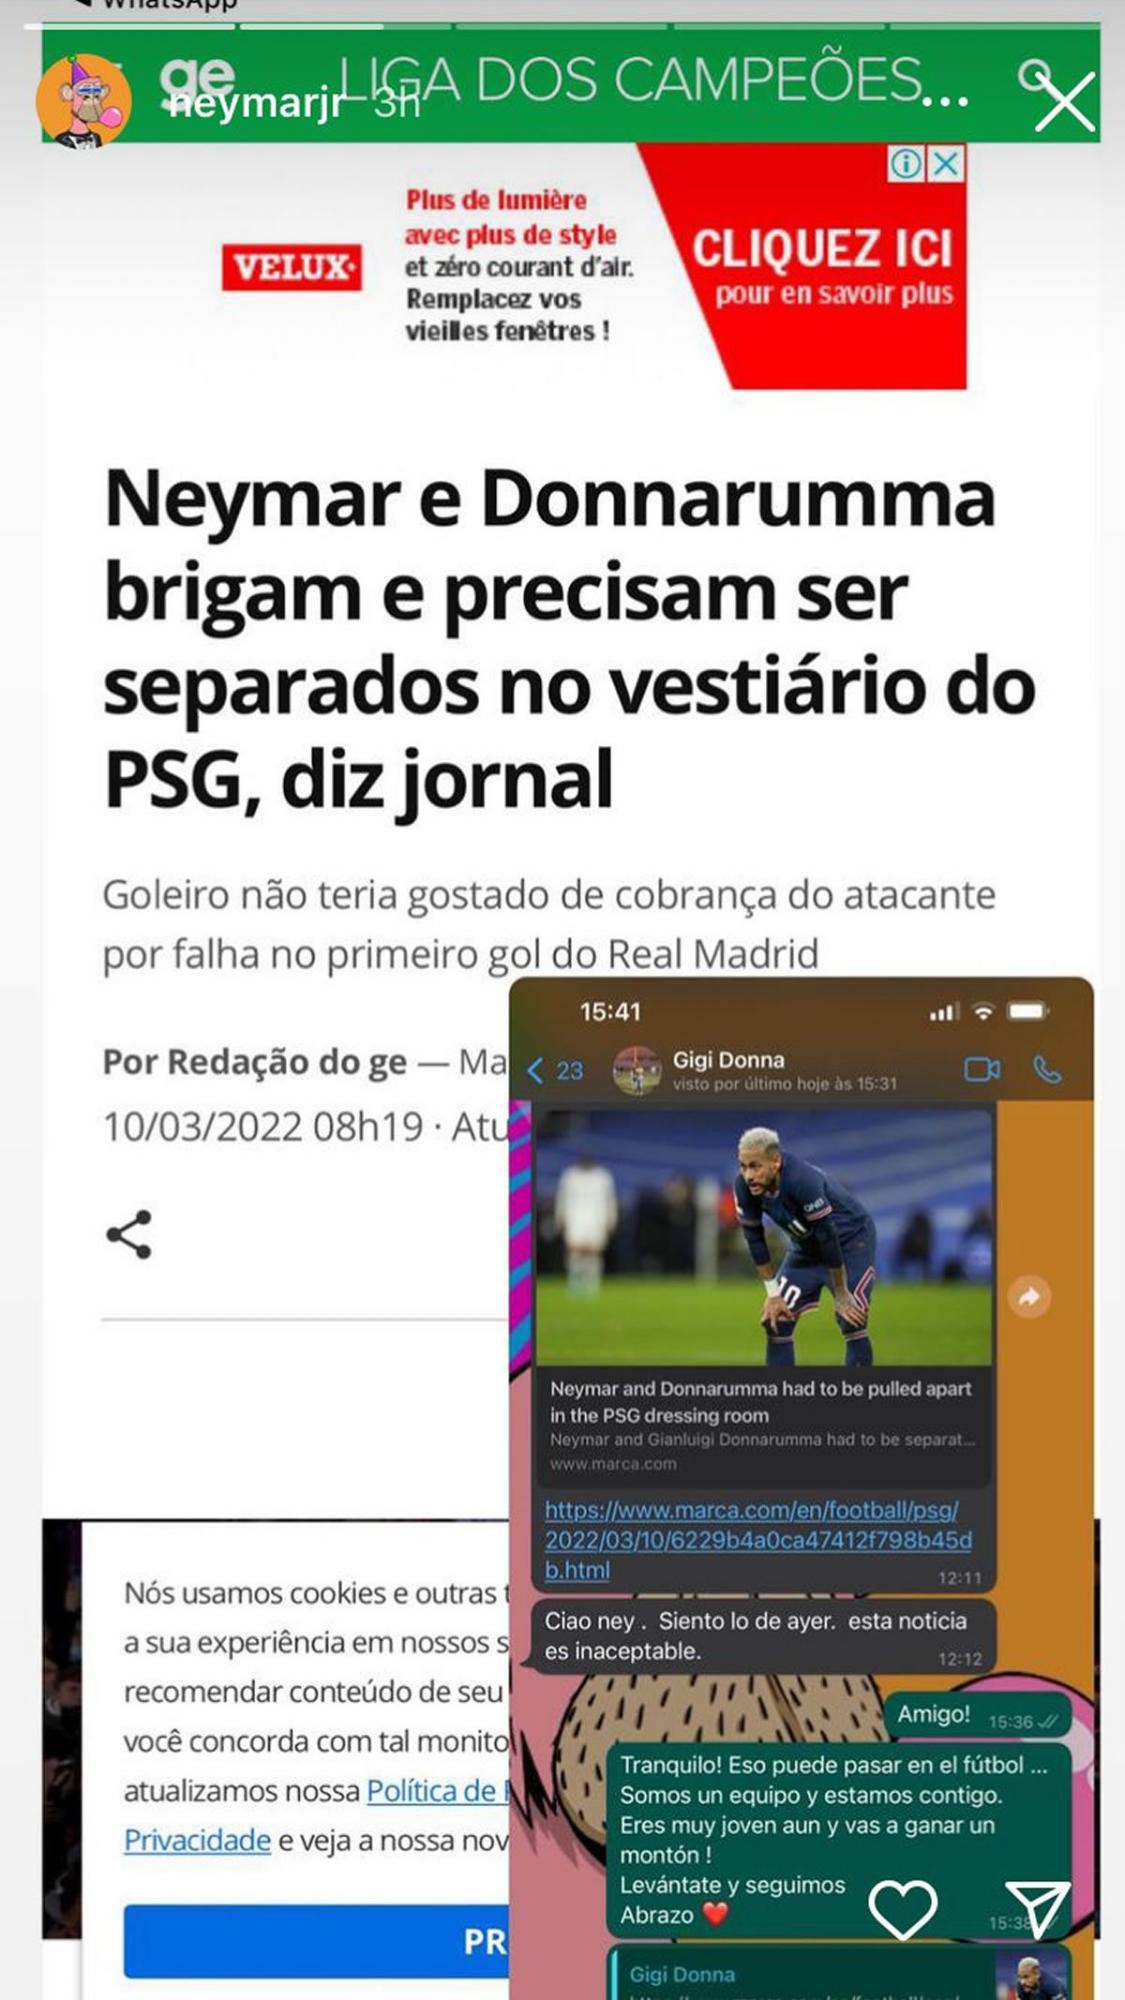 La noticia que desmintió Neymar en sus redes sociales y el mensaje que le escribió Donnarumma en WhatsApp.